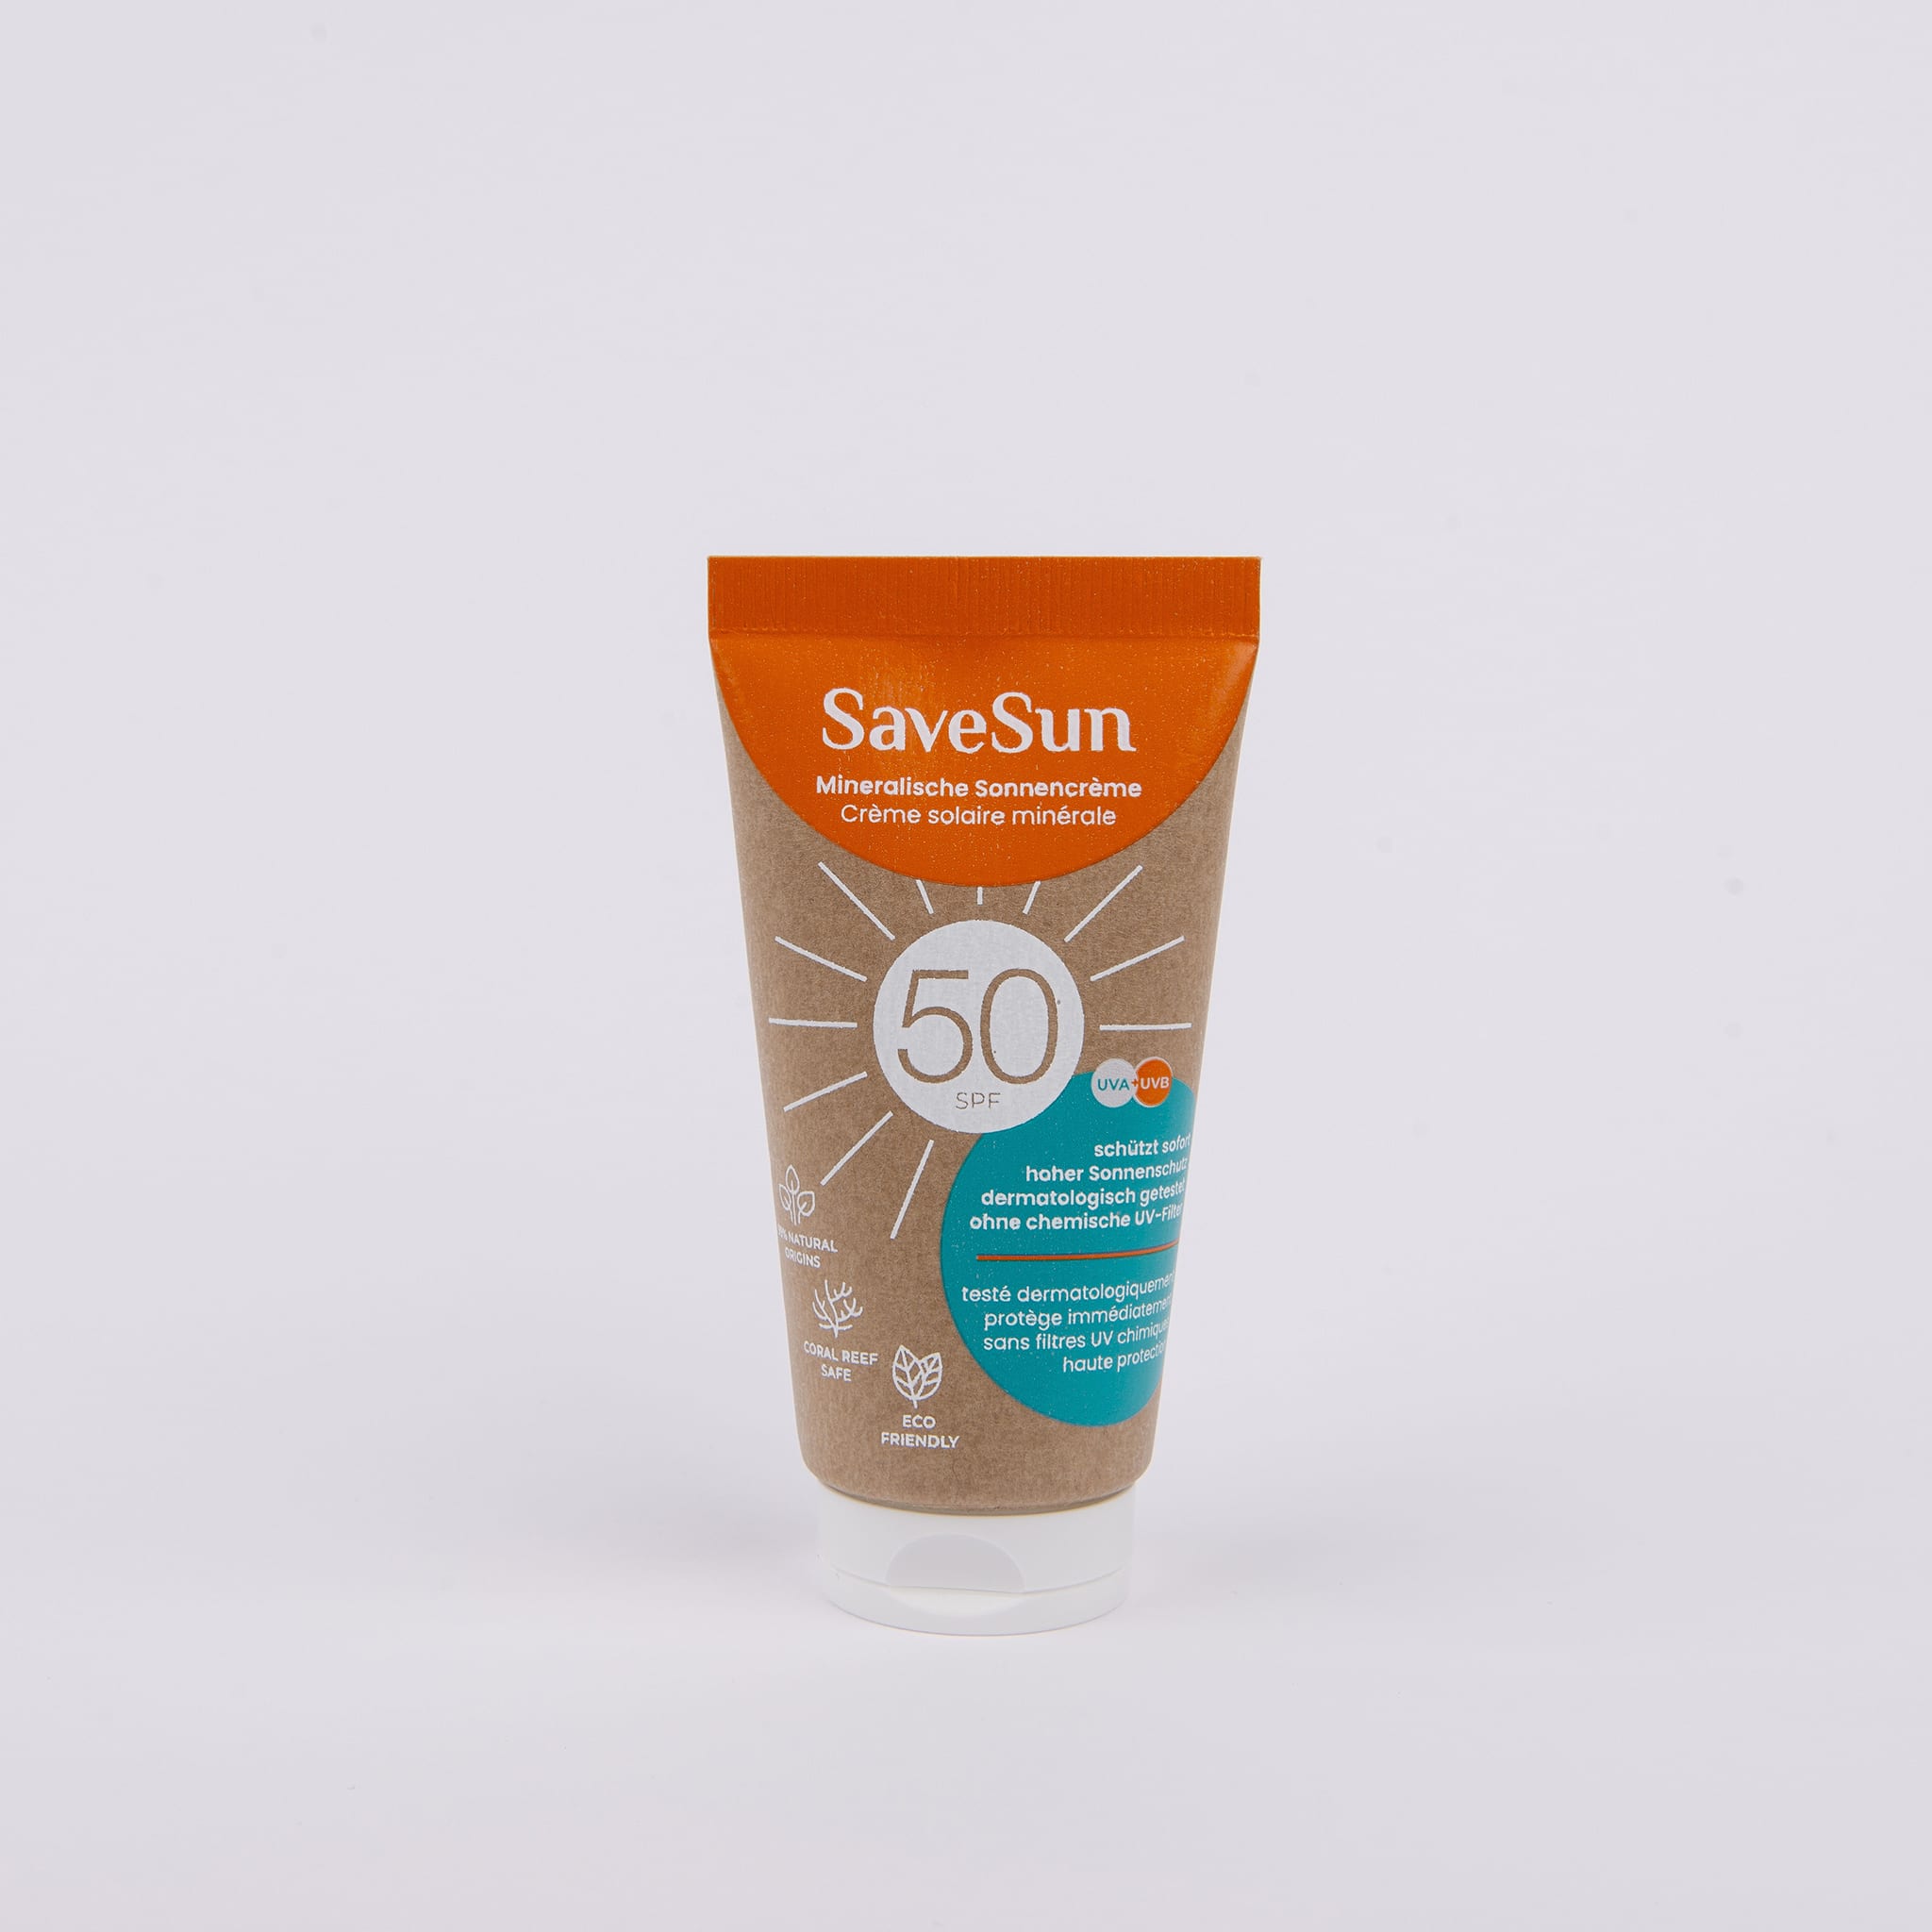 SaveSun mineralische Sonnencreme LSF50 Set - washo.ch